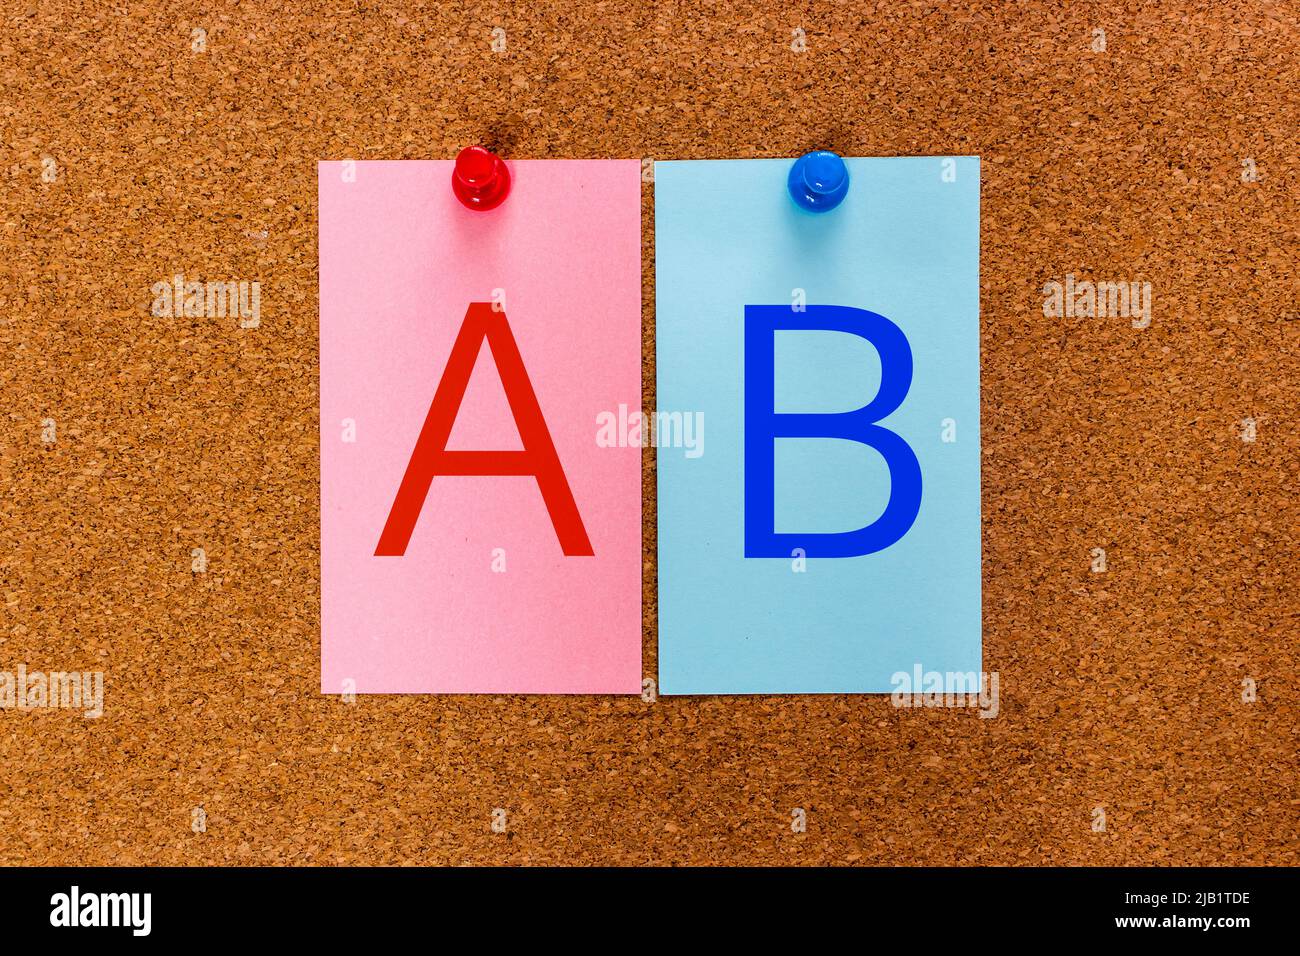 Conceptuel 2 lettres AB sur des autocollants multicolores attachés à un panneau en liège. Expérience utilisateur méthodologie de recherche AB test. Banque D'Images